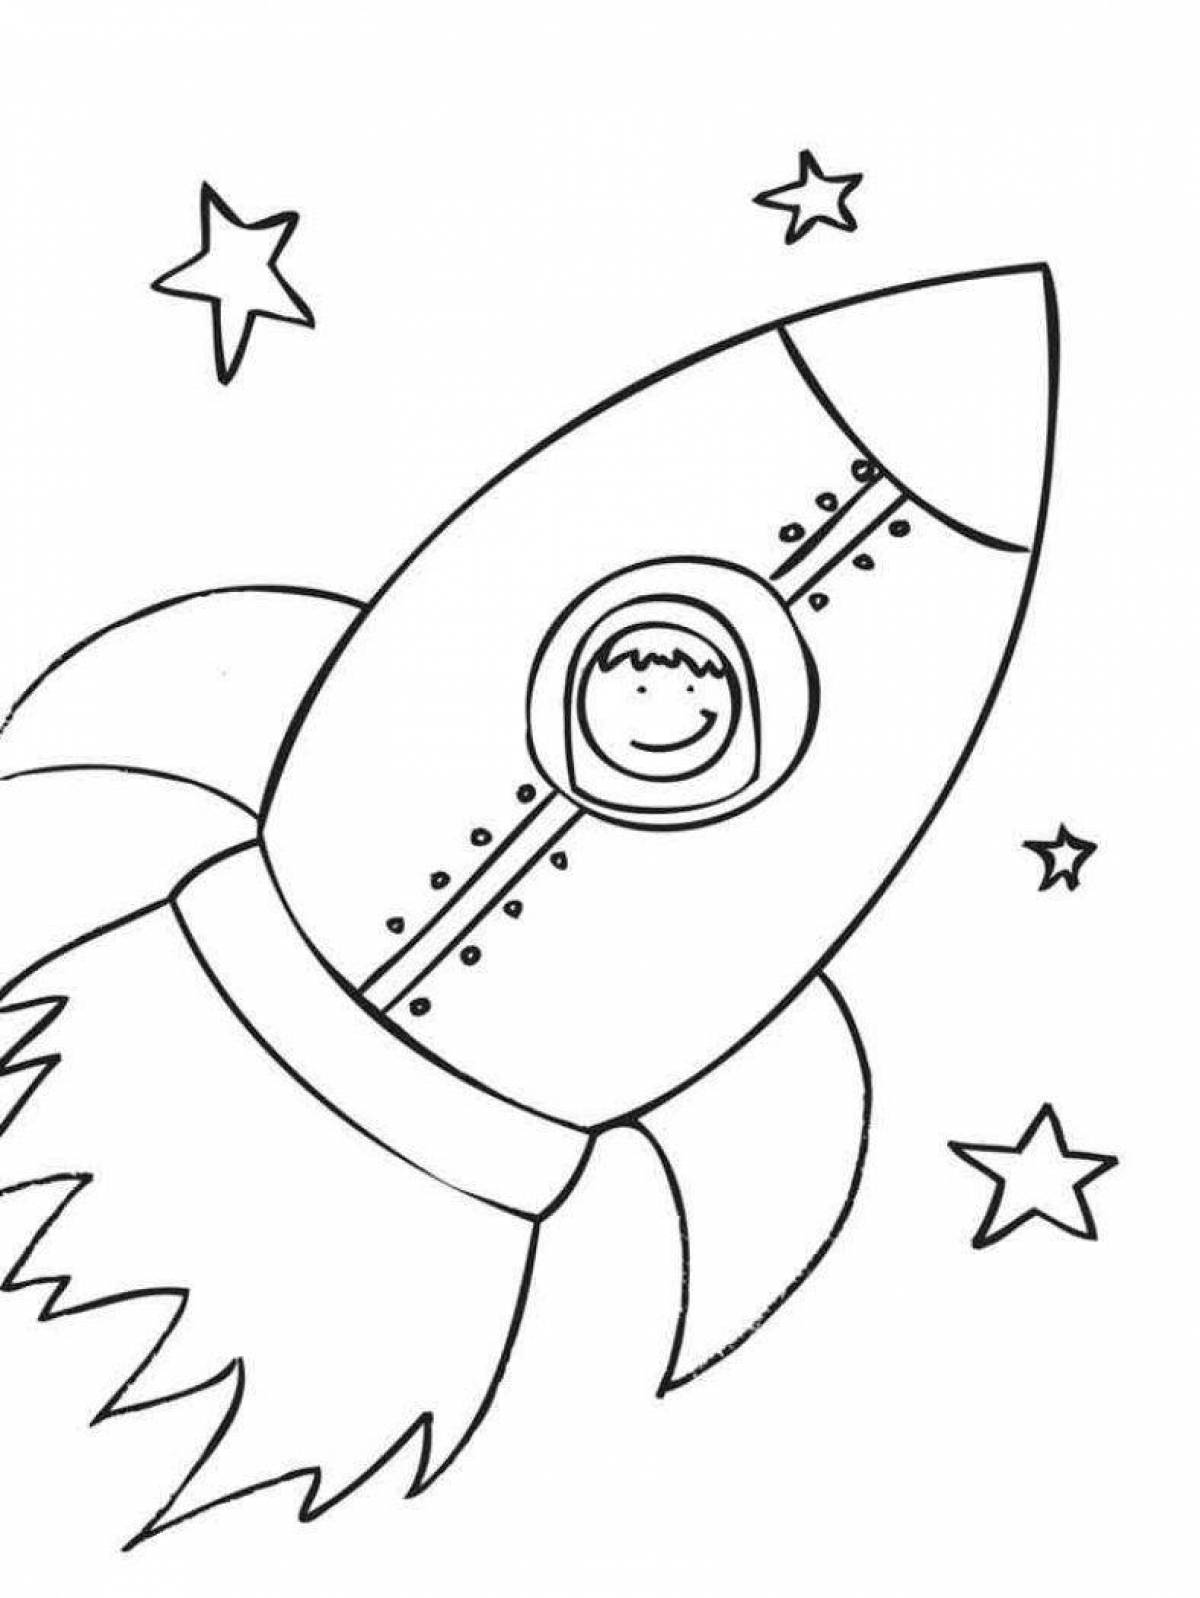 Рисунок на день космонавтики раскраска. Ракета раскраска. Раскраска для малышей. Космос. Космос раскраска для детей. Ракета раскраска для детей.